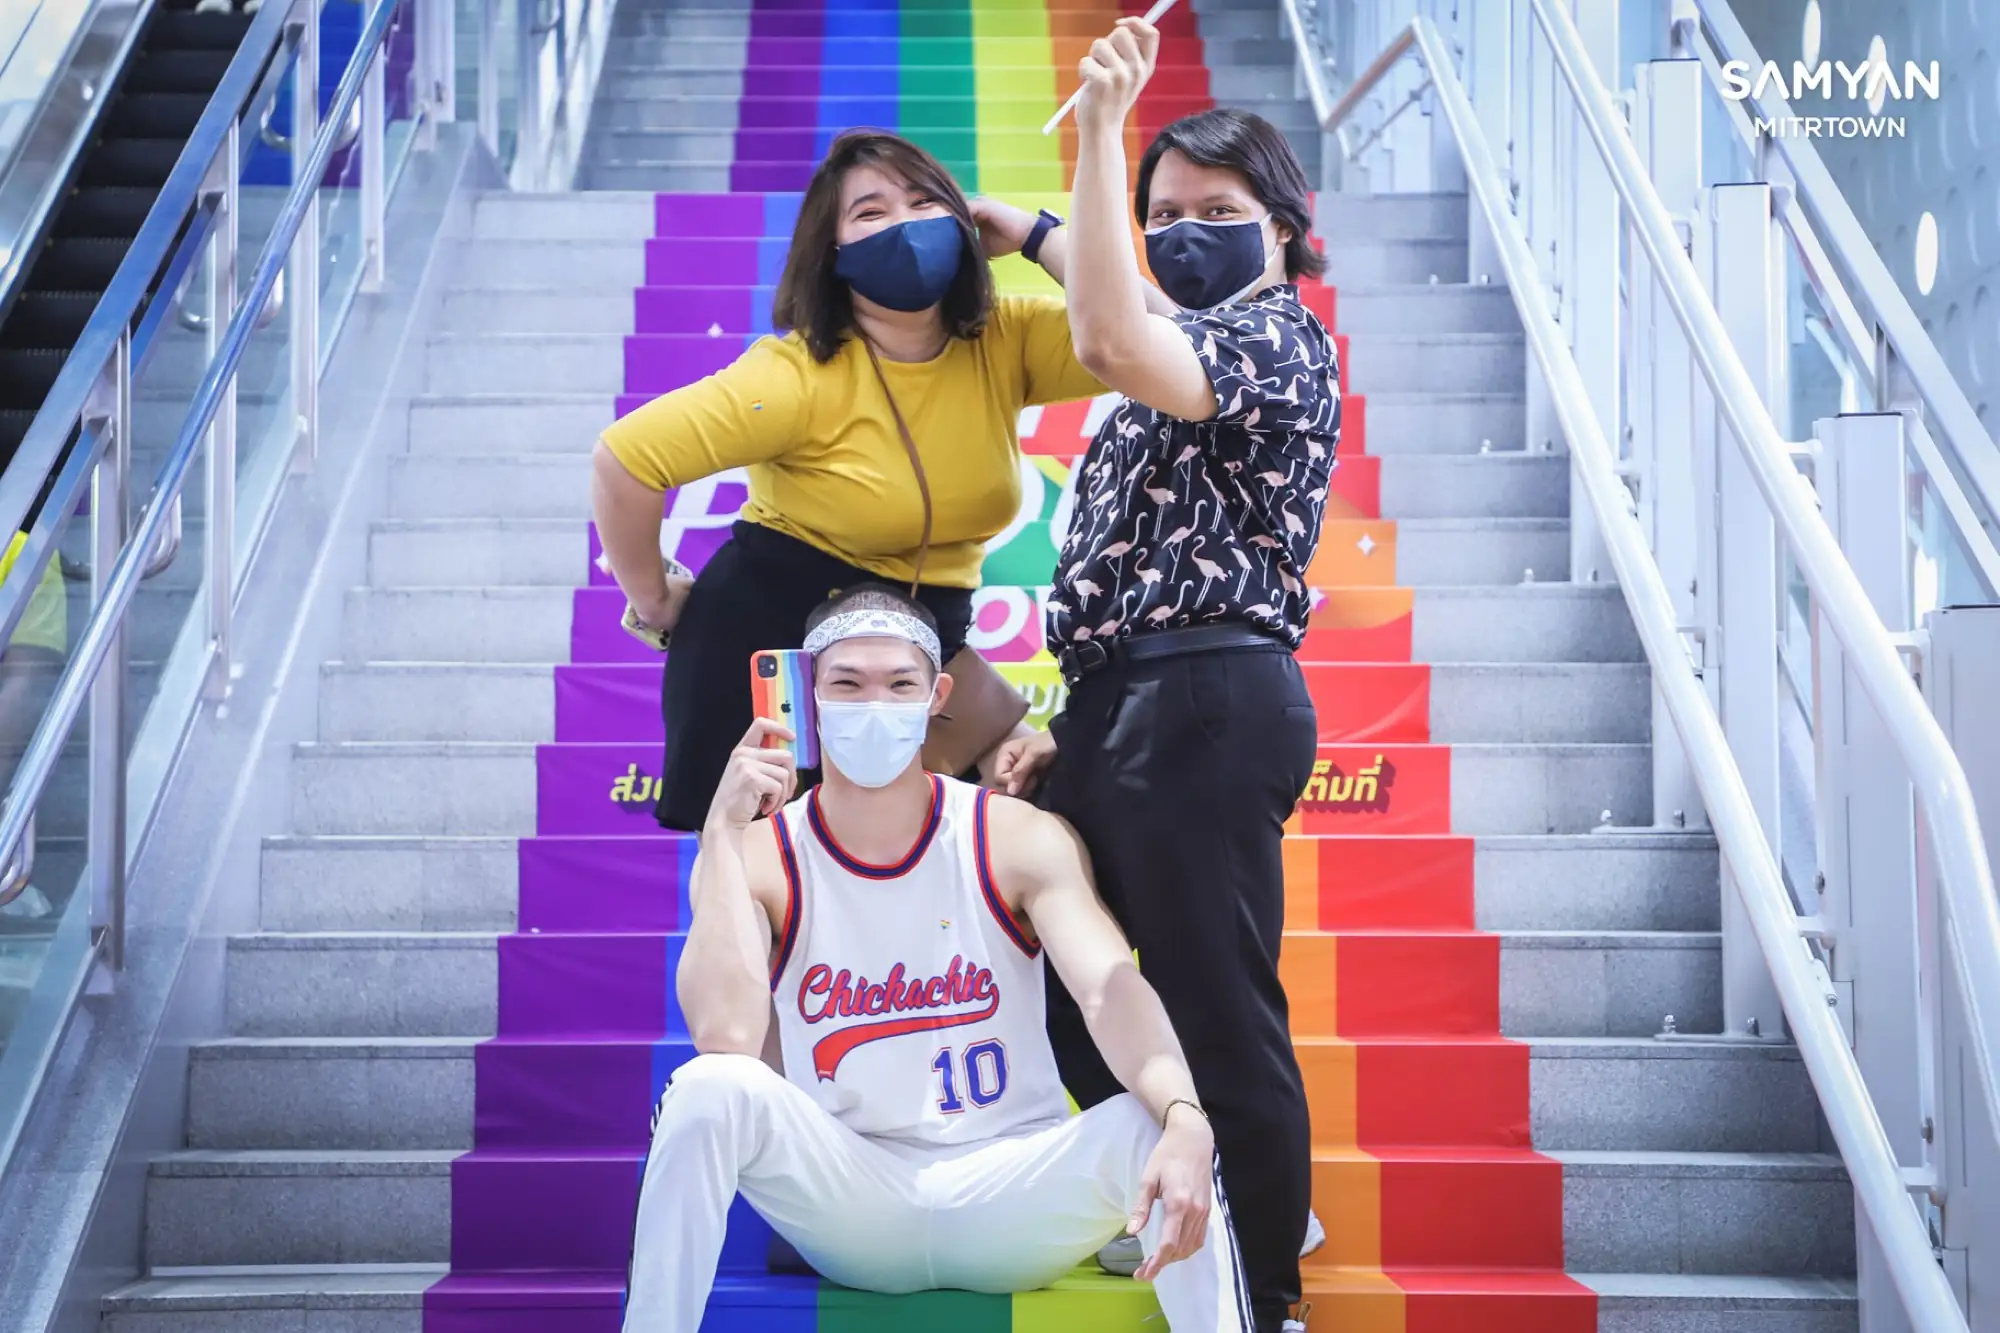 泰國同志驕傲月歡慶！山燕生活商場打造LGBT彩虹通道（來源：@SAMYANMITRTOWN粉專）